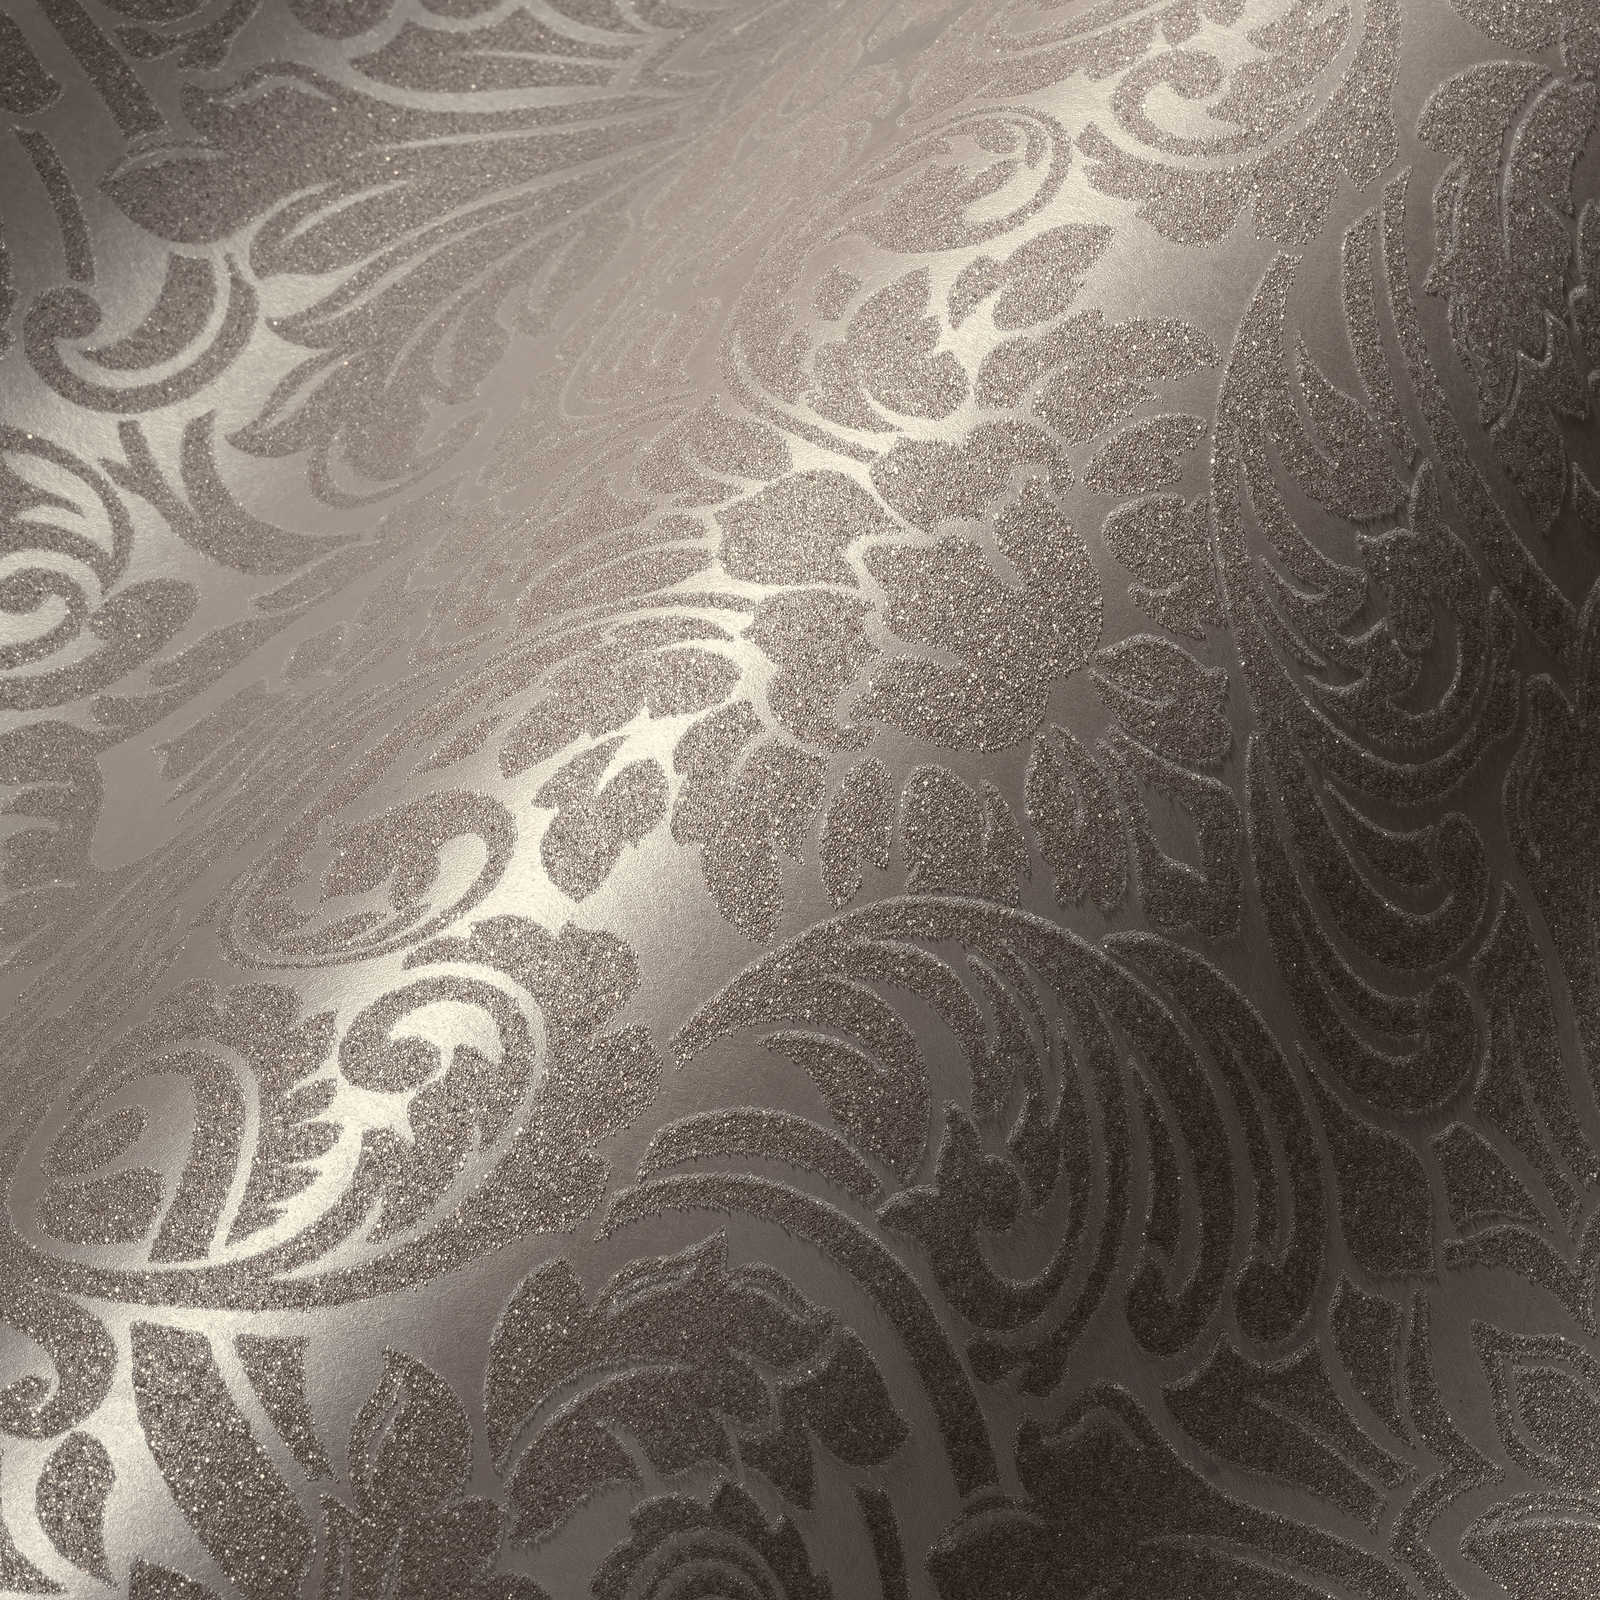             Papier peint ornemental à effet métallique et motif floral - bronze, marron
        